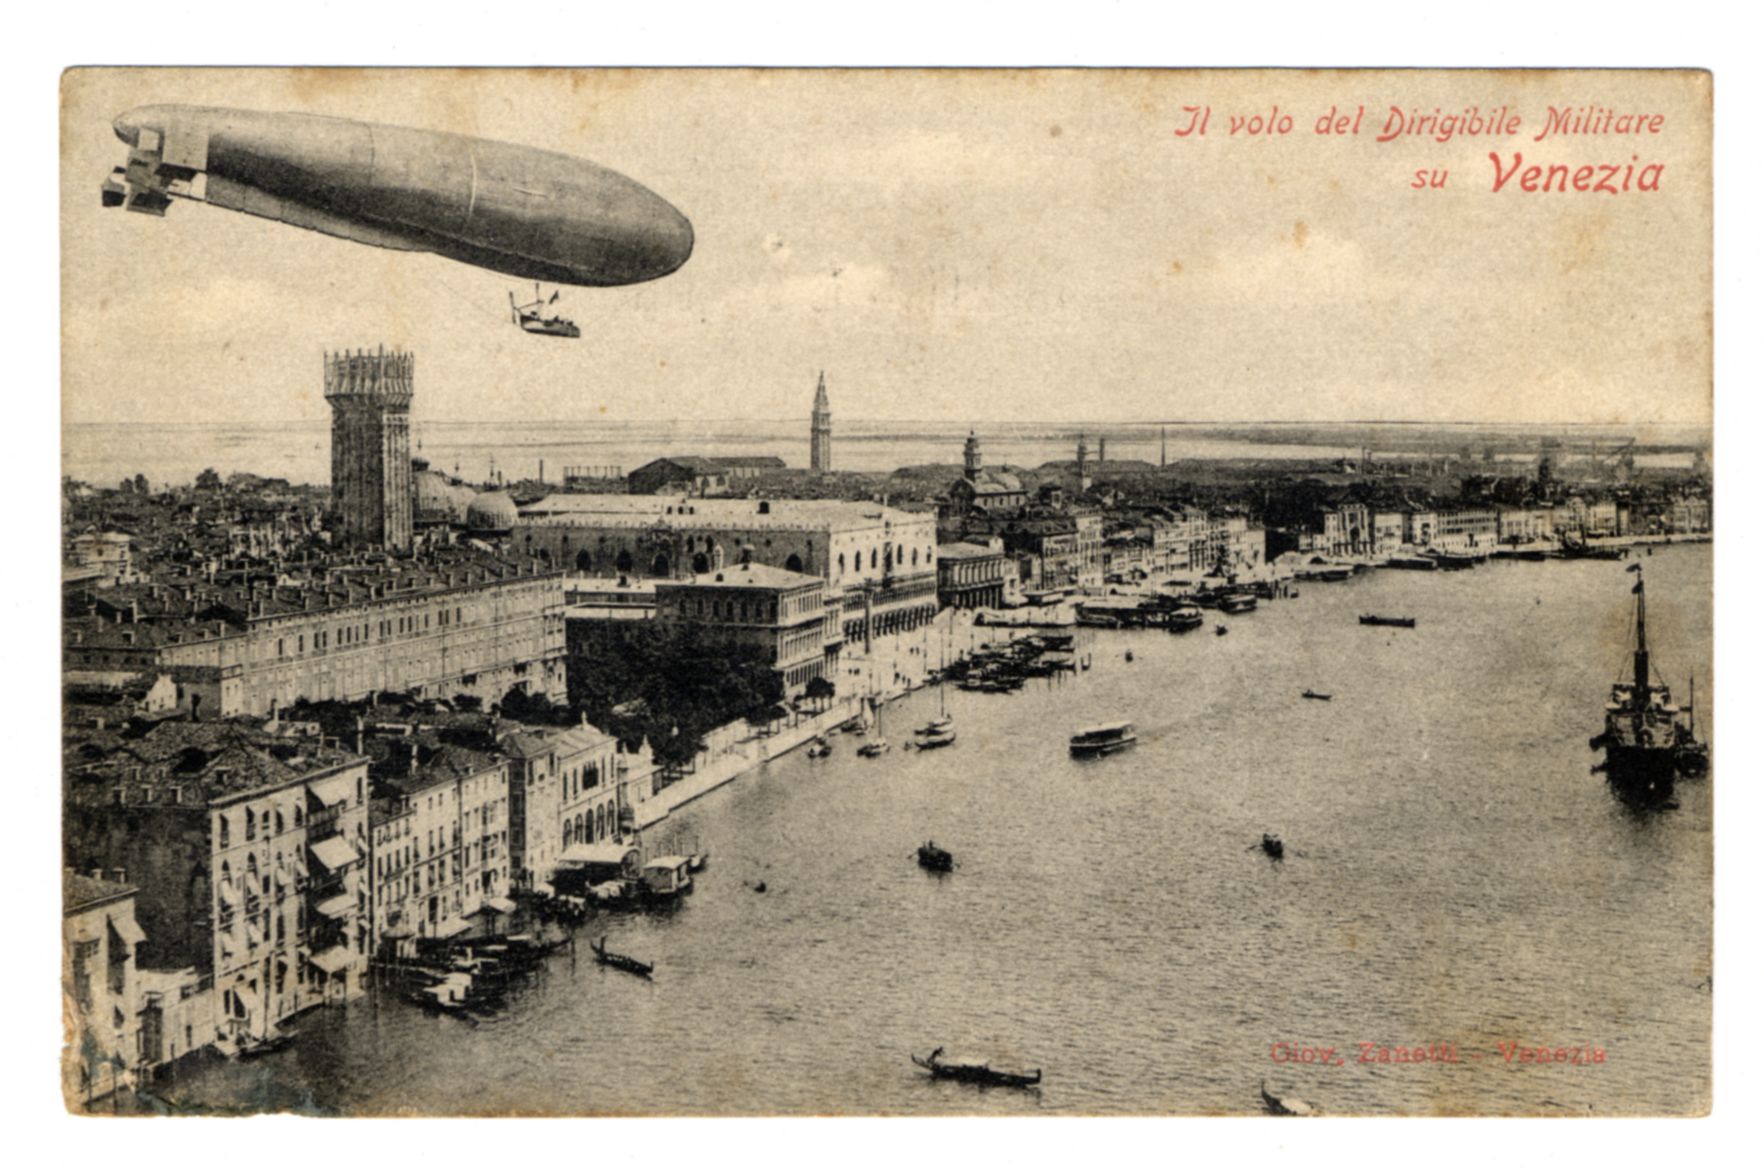 Fotografo non identificato, Il volo del dirigibile militare su Venezia 2 settembre 1910, 1910, fotografia analogica, FFC042817